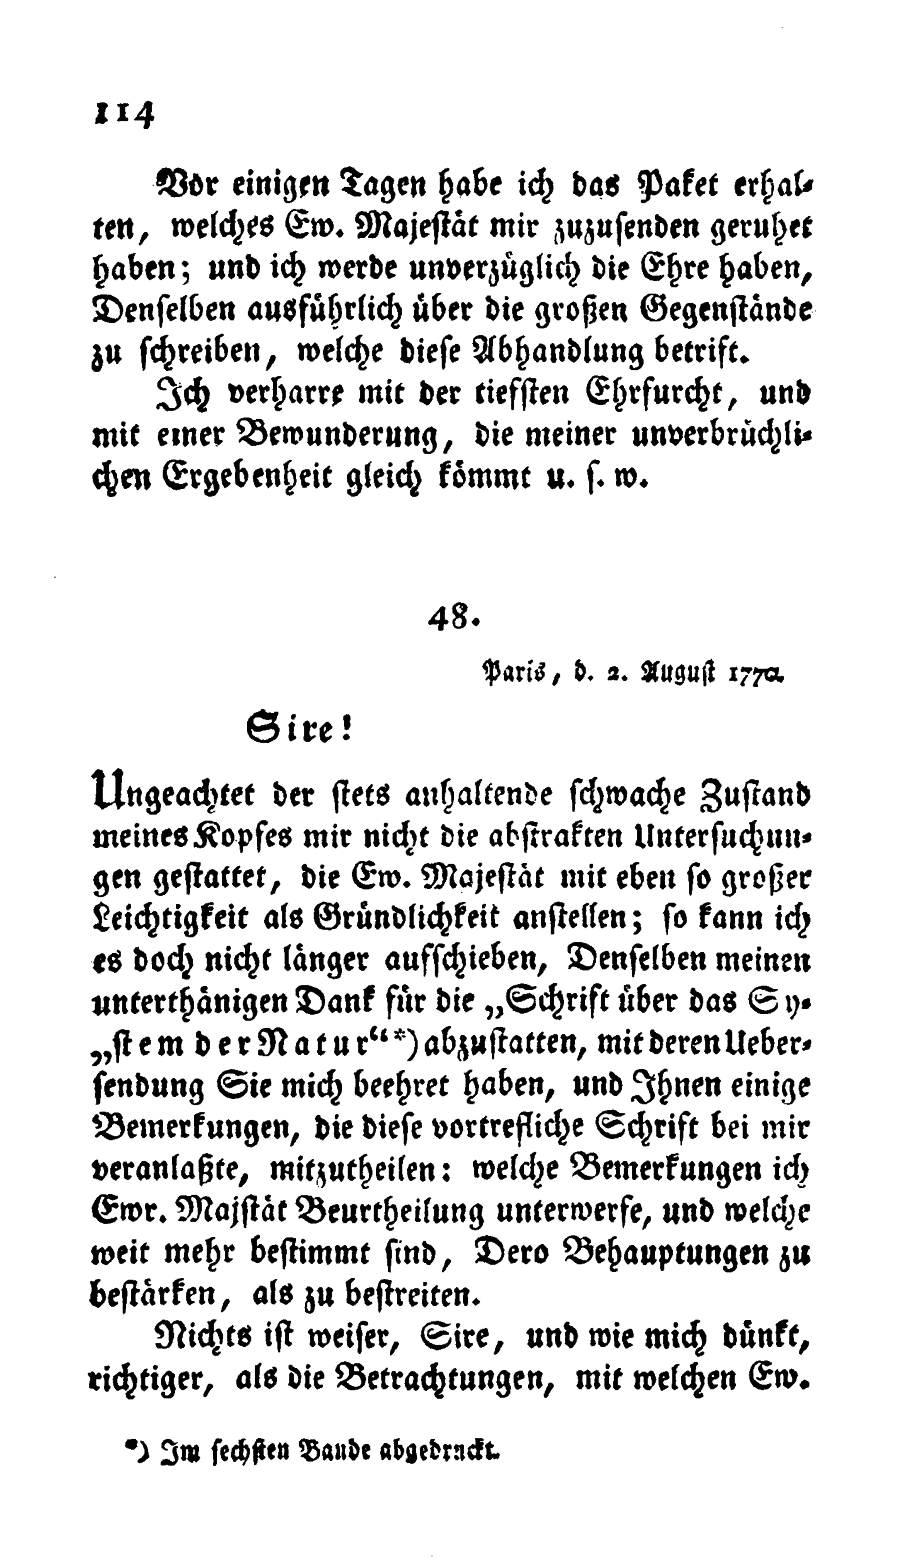 S. 114, Obj. 2